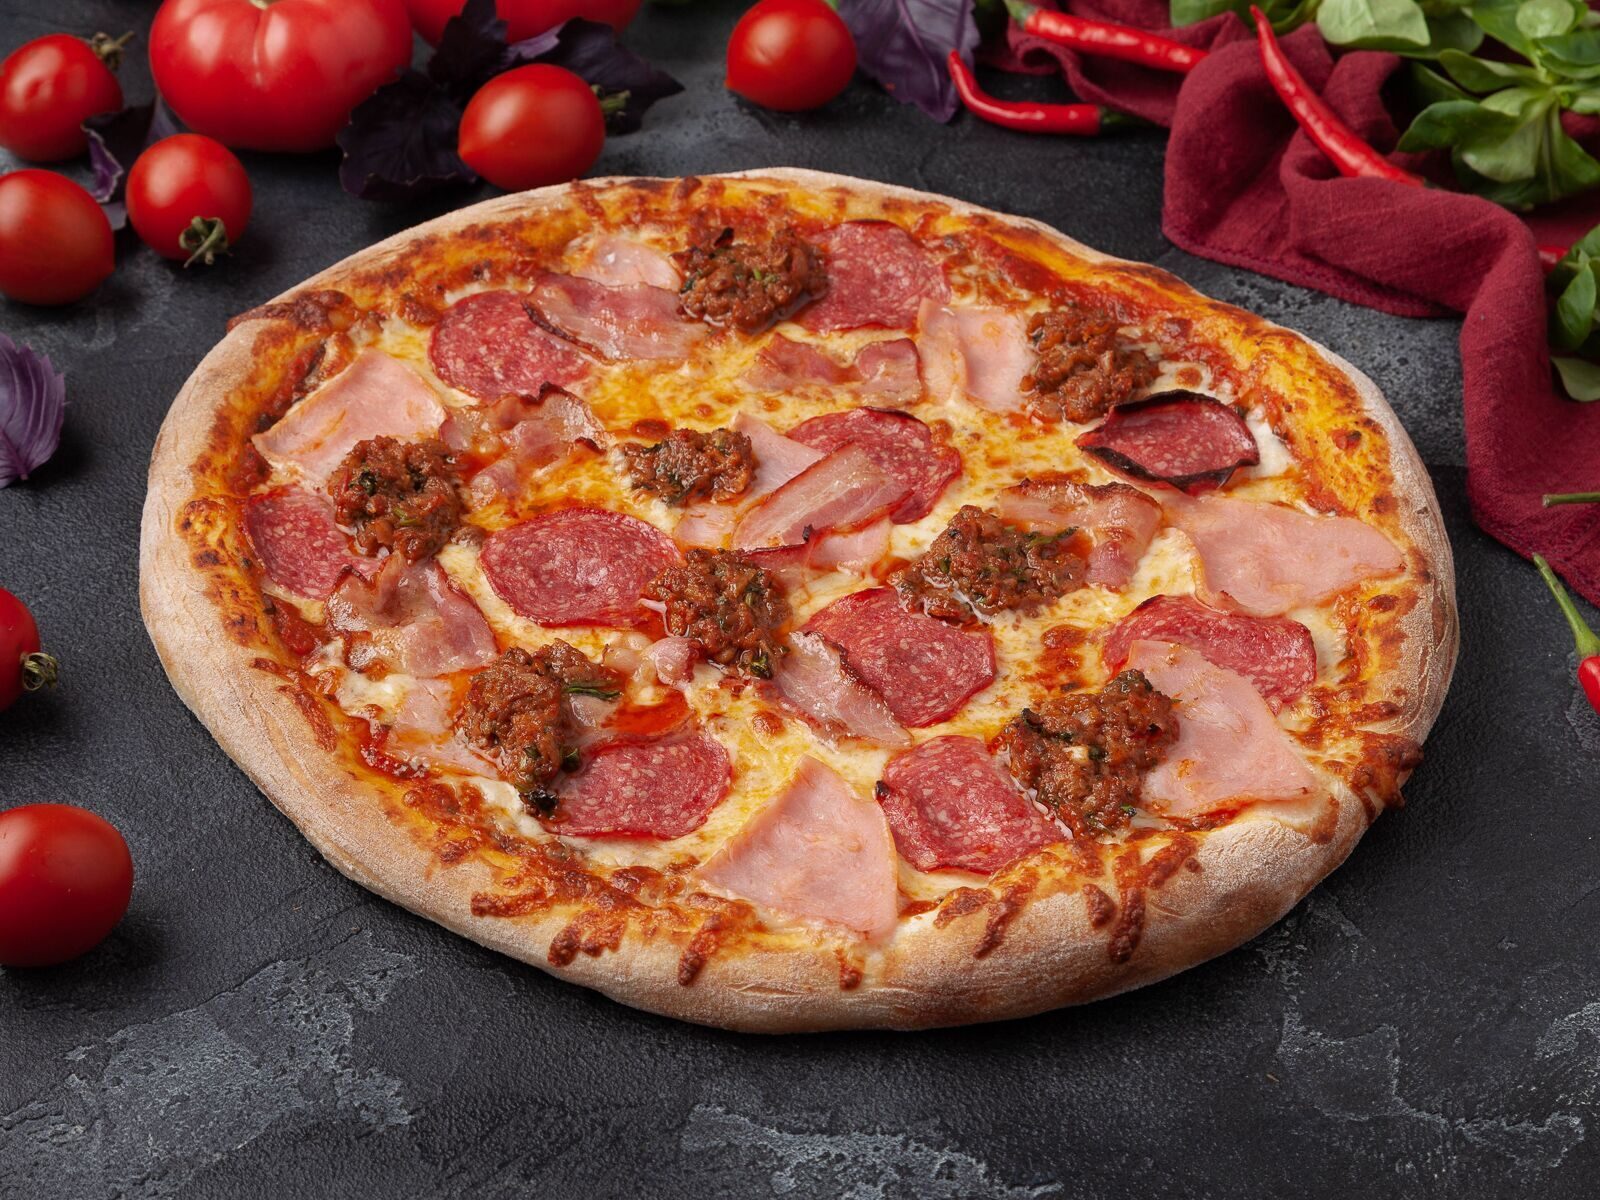 сколько стоит большая пицца пепперони в додо пицце фото 117